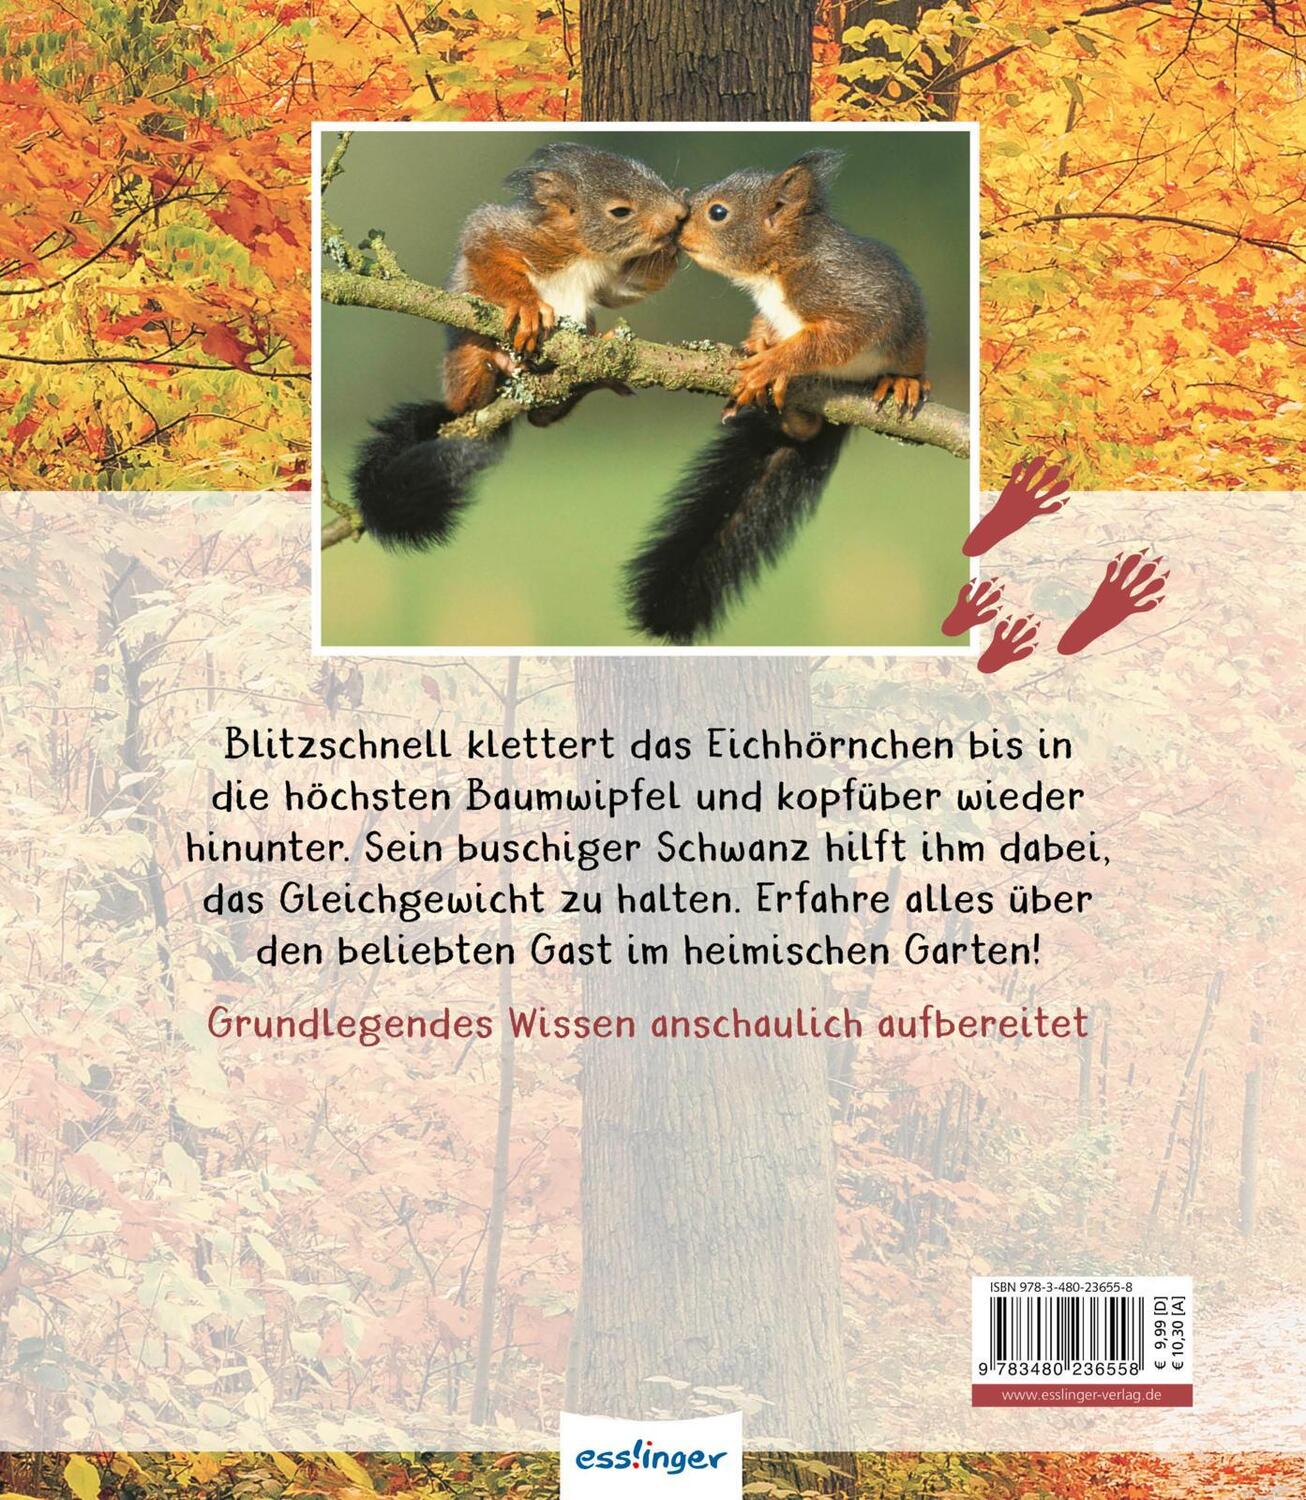 Rückseite: 9783480236558 | Meine große Tierbibliothek: Das Eichhörnchen | Stéphanie Ledu-Frattini